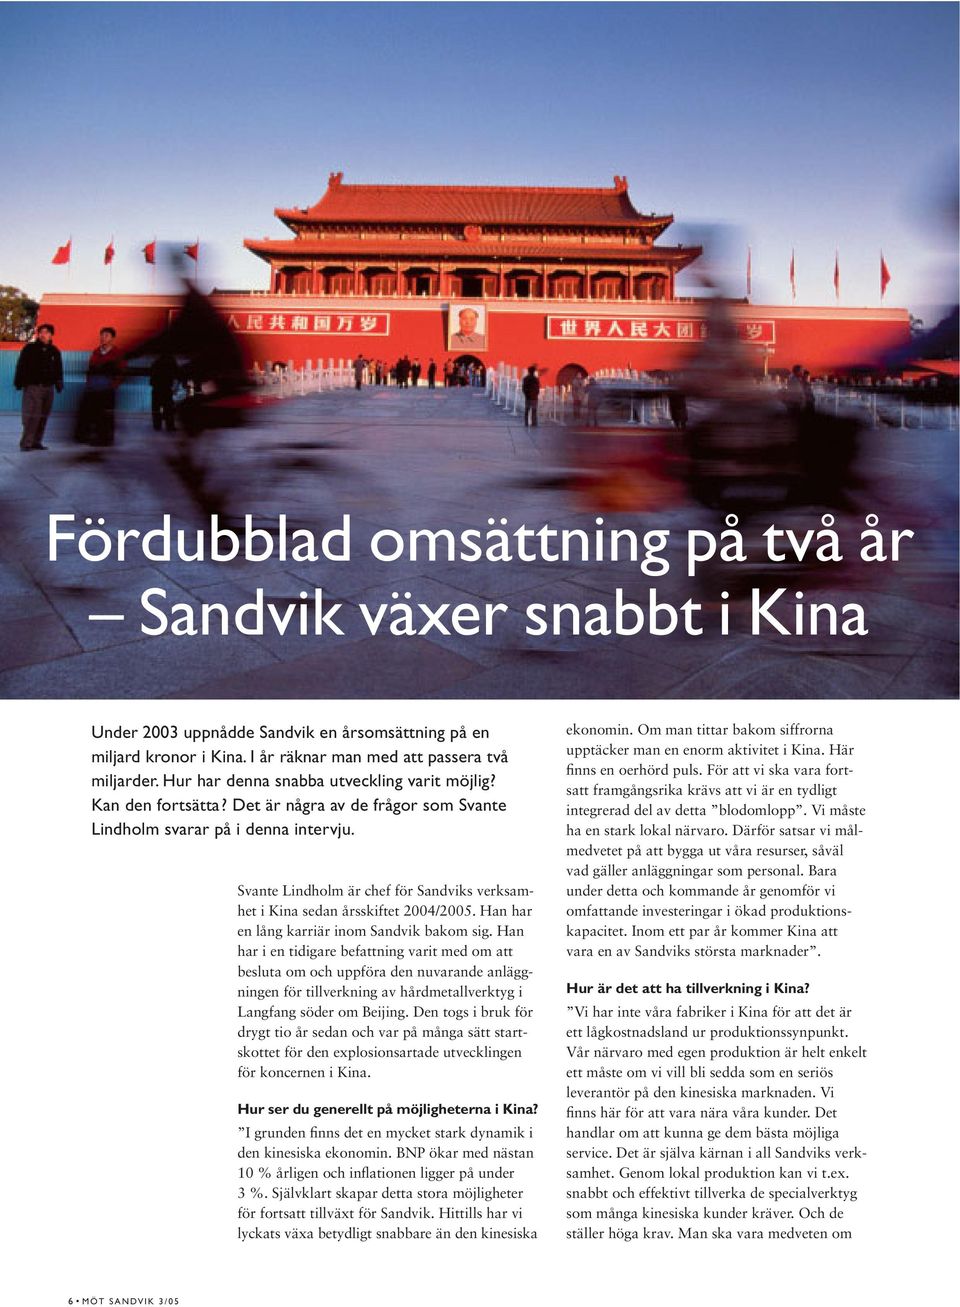 Svante Lindholm är chef för Sandviks verksamhet i Kina sedan årsskiftet 2004/2005. Han har en lång karriär inom Sandvik bakom sig.